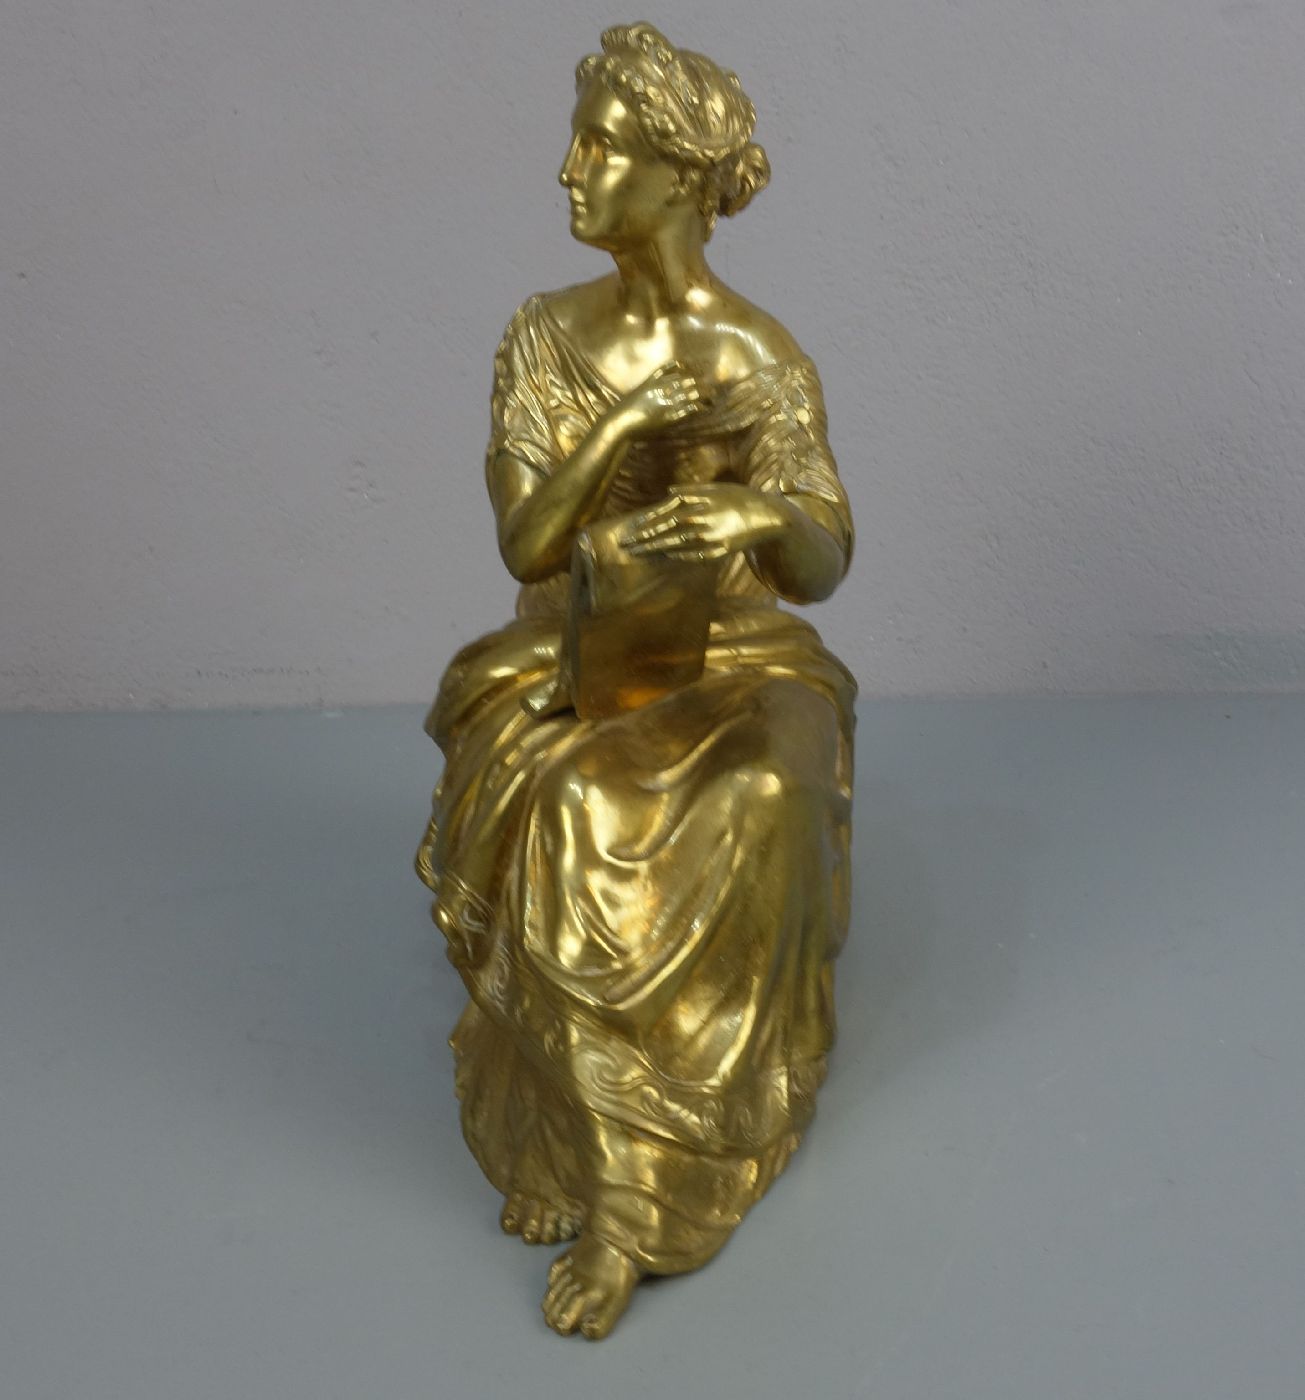 HOULET (französischer Bildhauer des 19. Jh.), Skulptur / sculpture: "Allegorie der Lyrik", Bronze - - Image 2 of 4